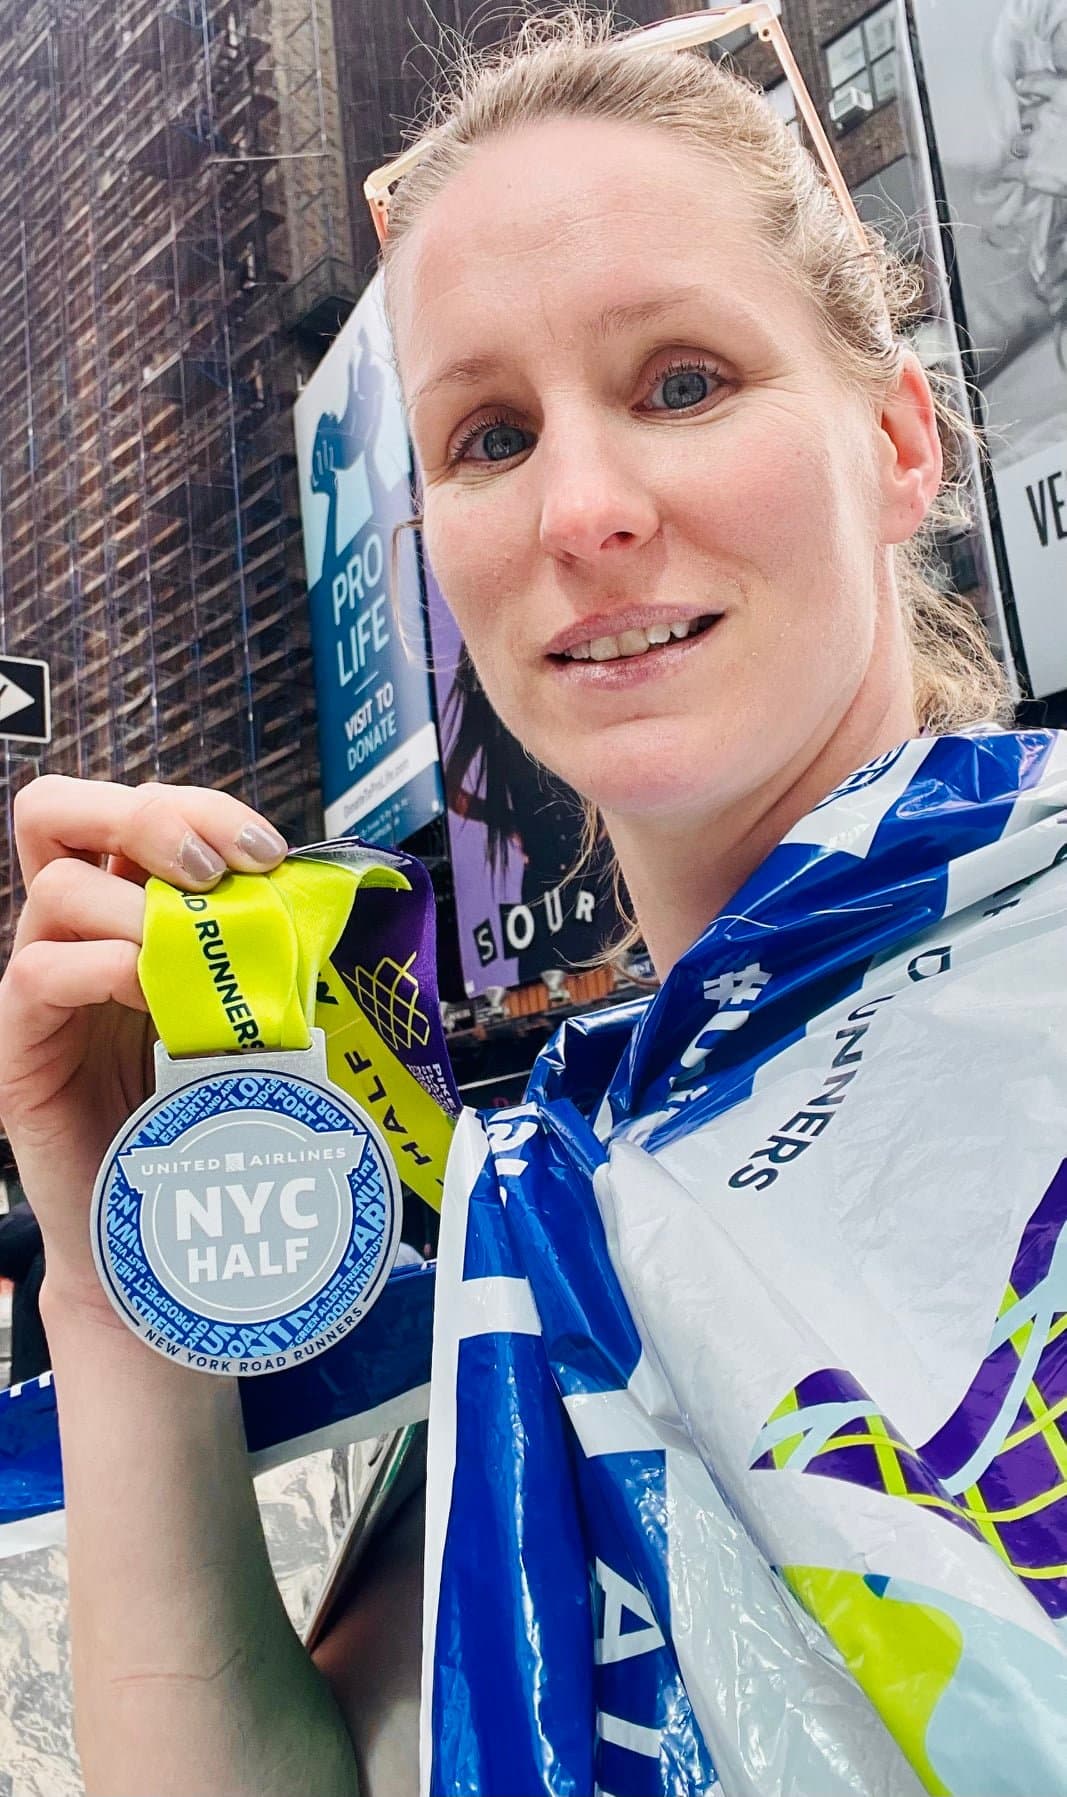 A half marathon runner holds up her medal